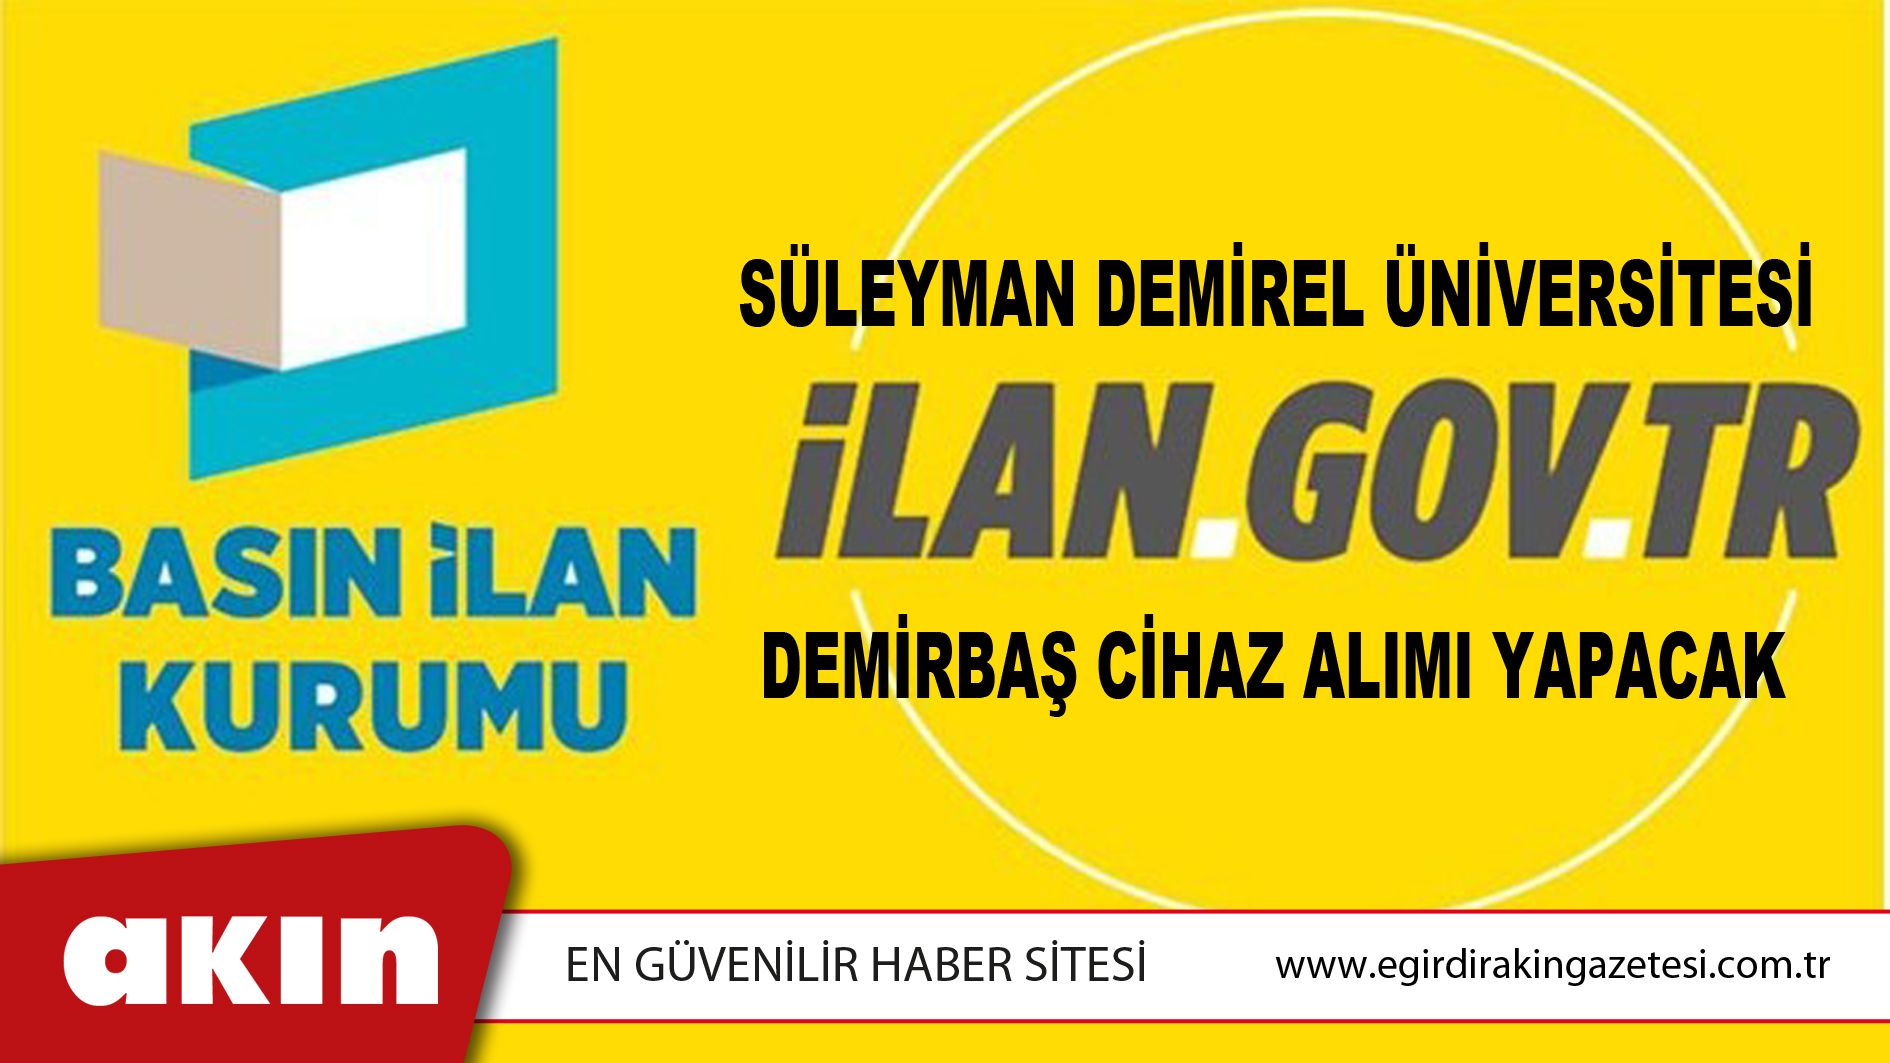 Süleyman Demirel Üniversitesi Demirbaş Cihaz Alımı Yapacak